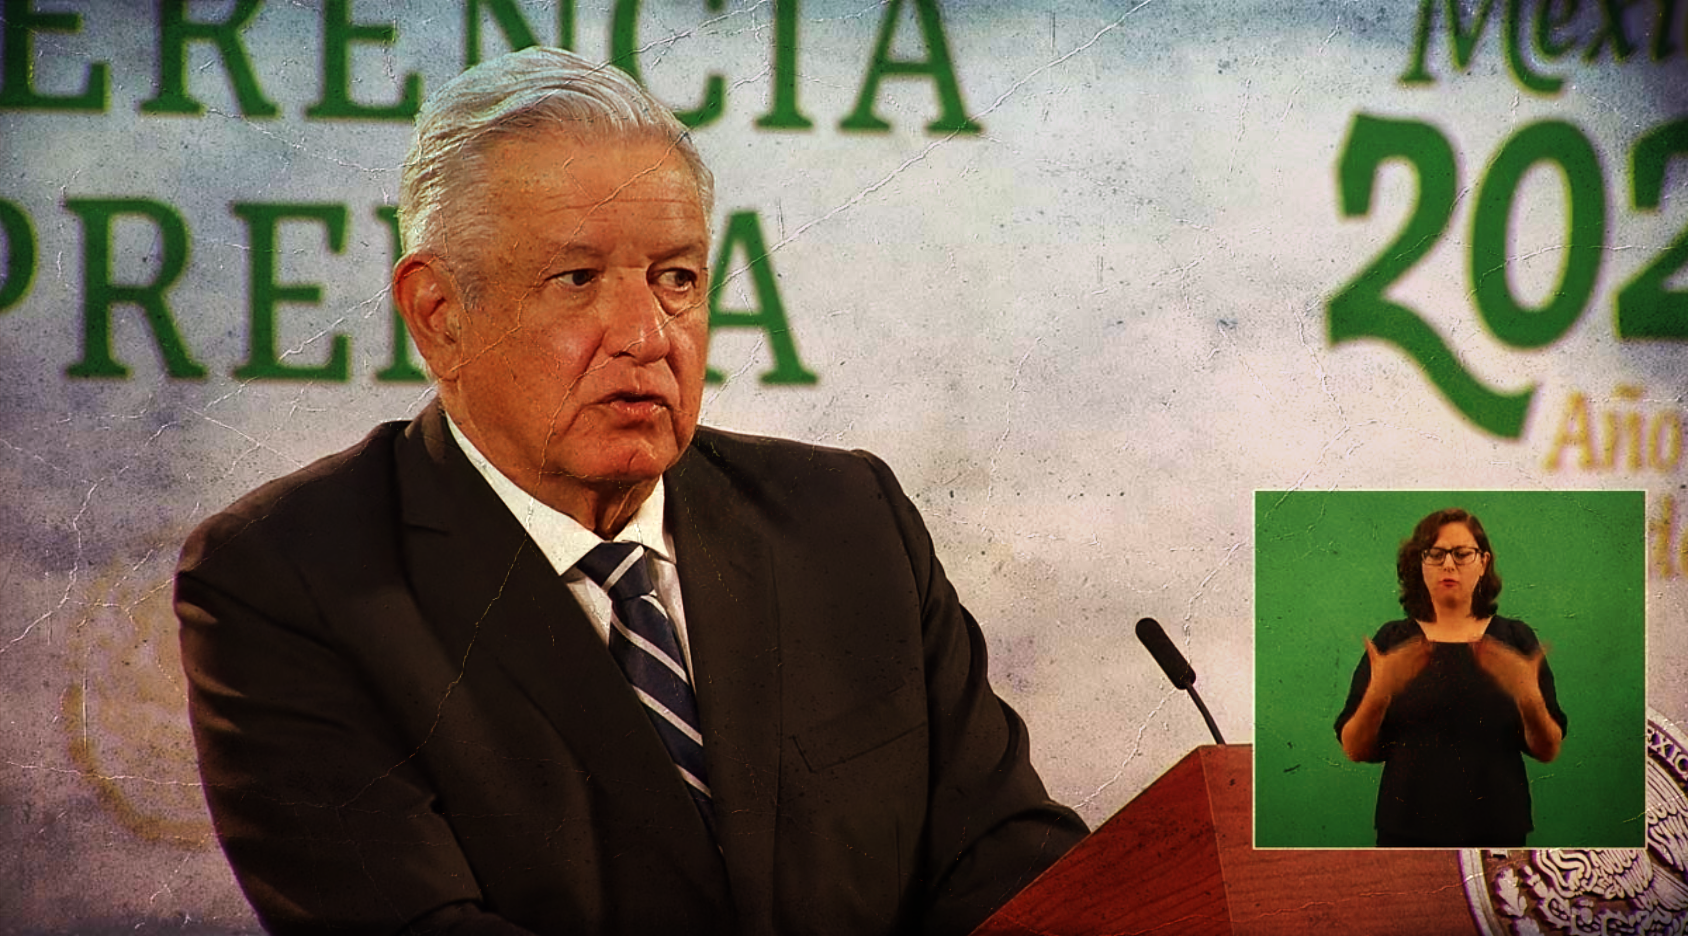 López Obrador le dice a médicos privados que exigen ser vacunados: “que nos esperen”, Asevera que el Reforma conspira para ponerlos en su contra.